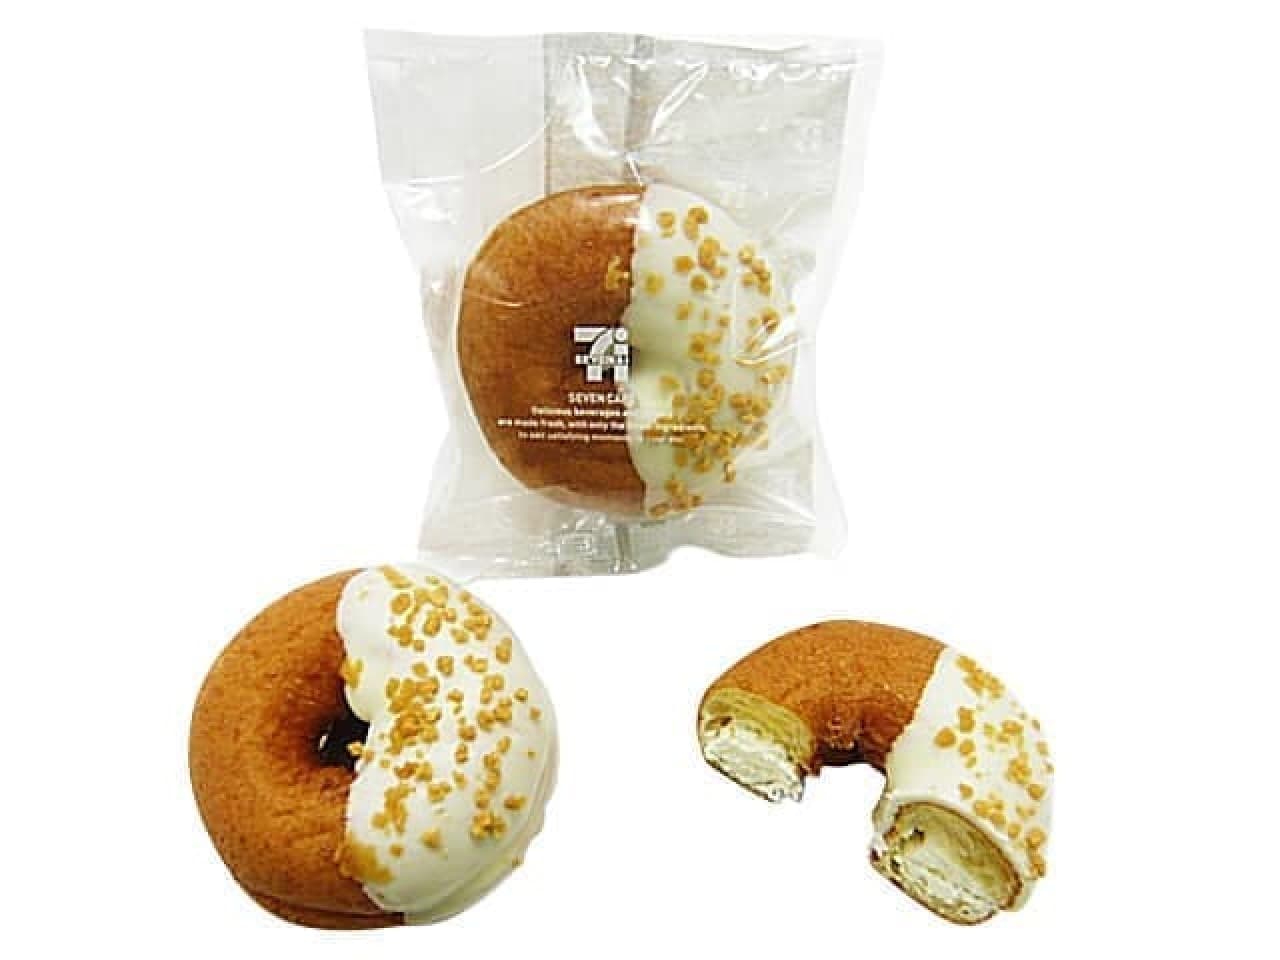 7-ELEVEN "Pom Donuts (Rare Cheese)"